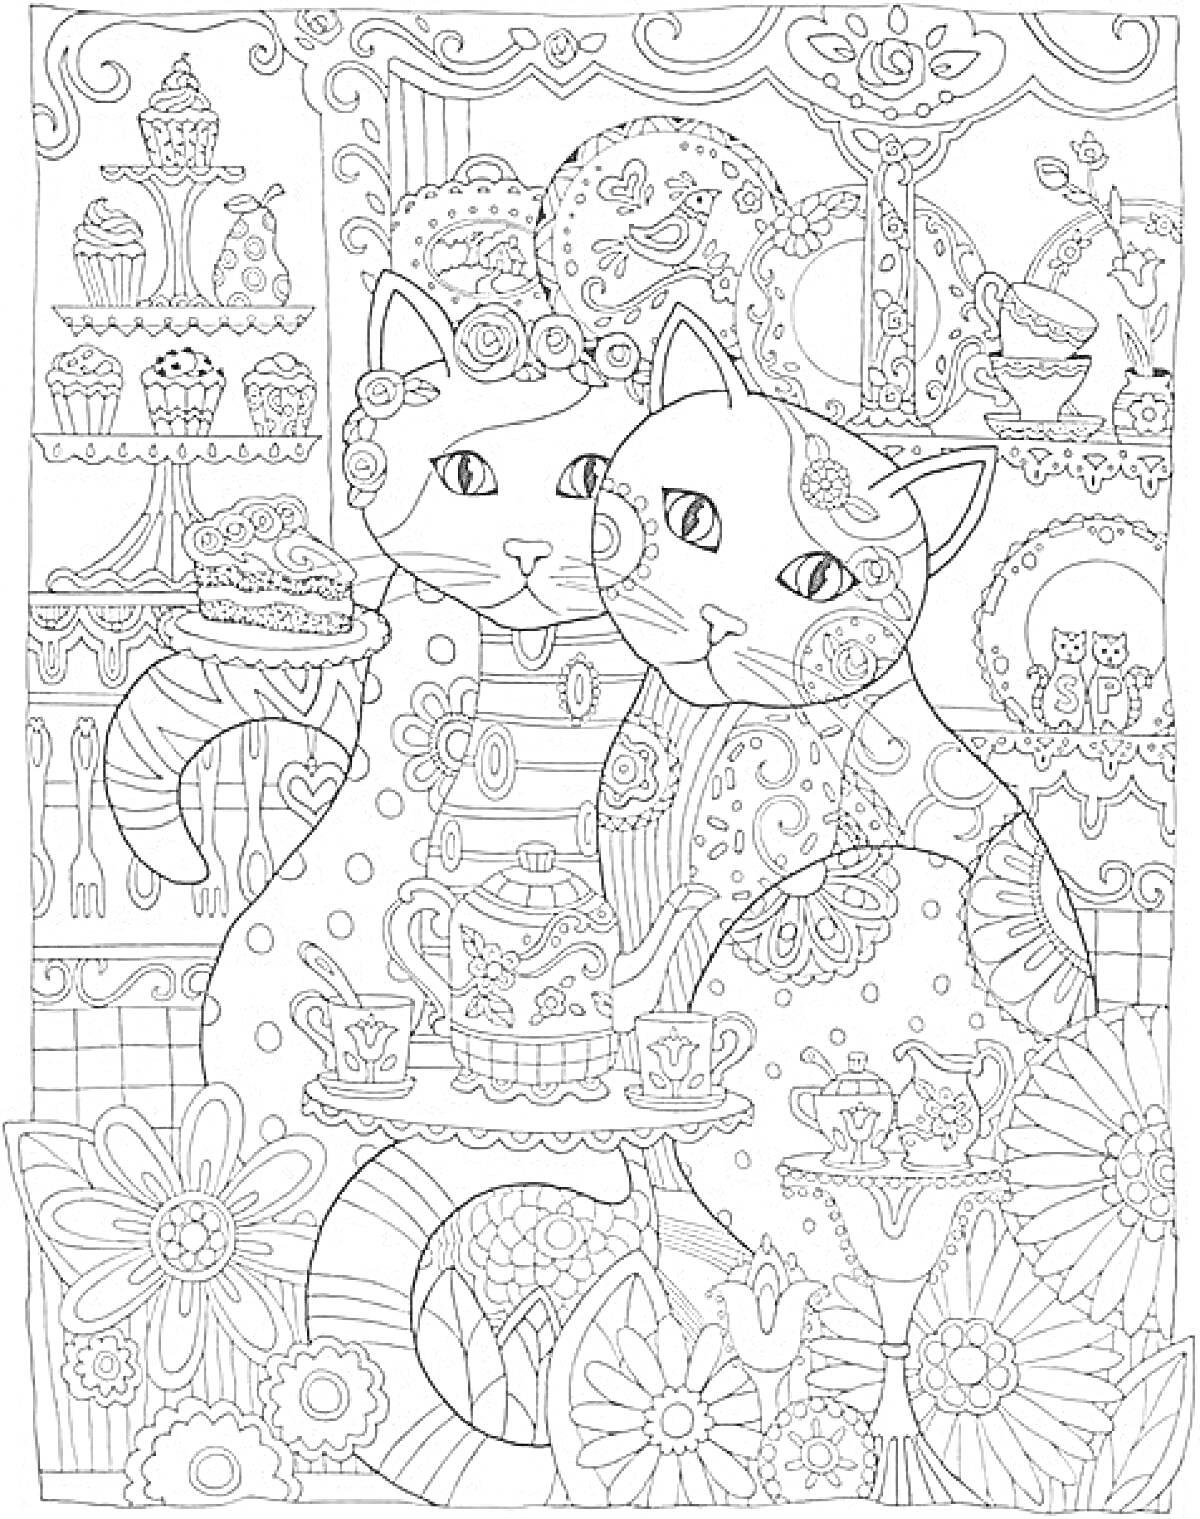 Раскраска Два кота с пирожными и чайным сервизом на фоне цветов и десертов